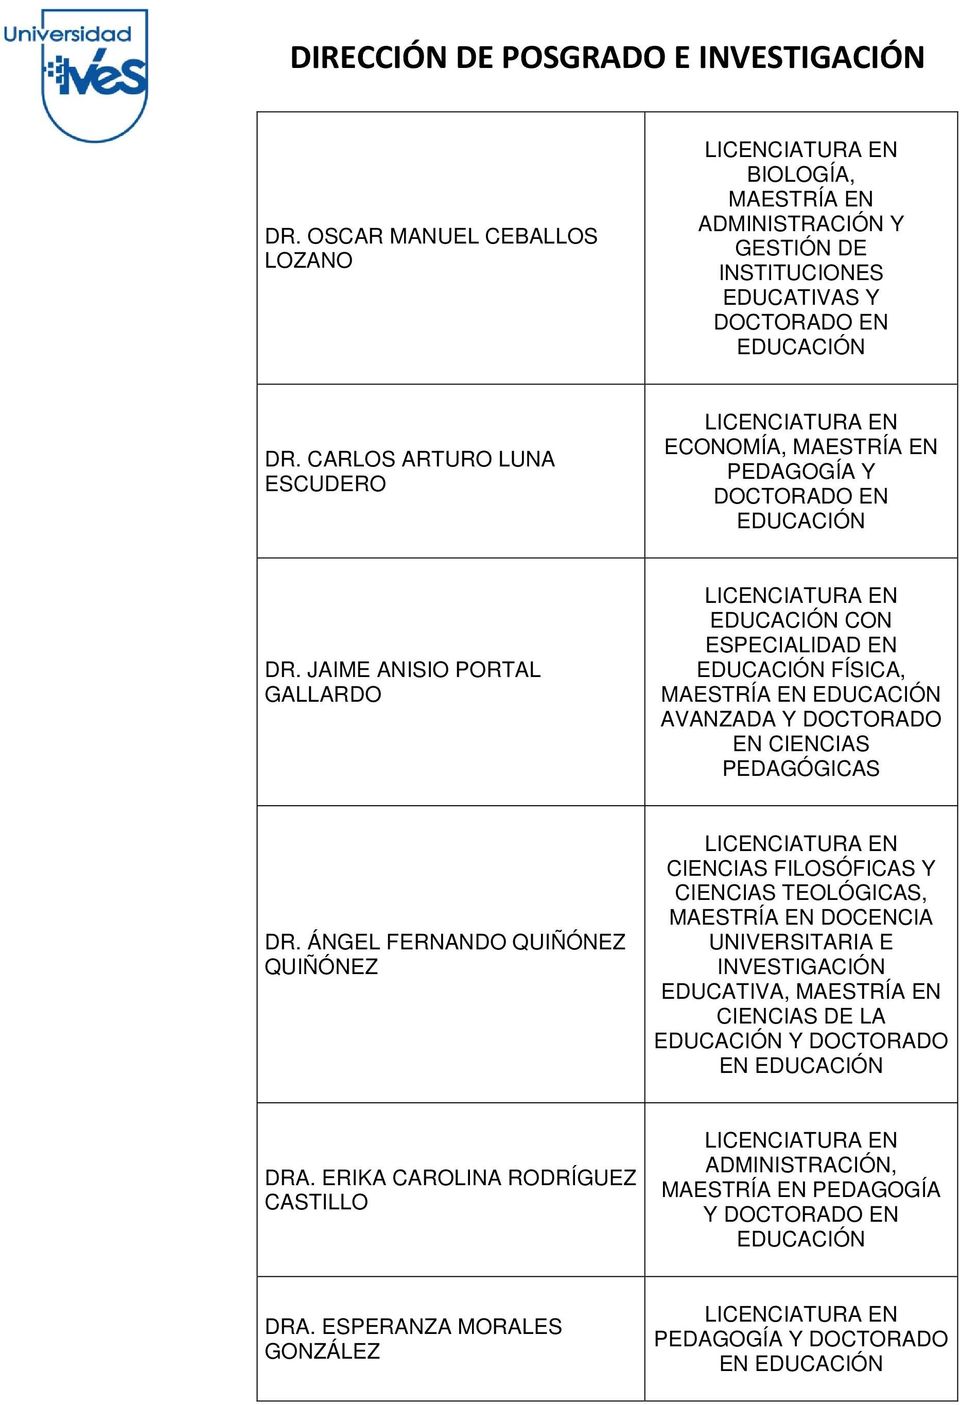 JAIME ANISIO PORTAL GALLARDO CON ESPECIALIDAD EN FÍSICA, AVANZADA Y DOCTORADO EN CIENCIAS PEDAGÓGICAS DR.